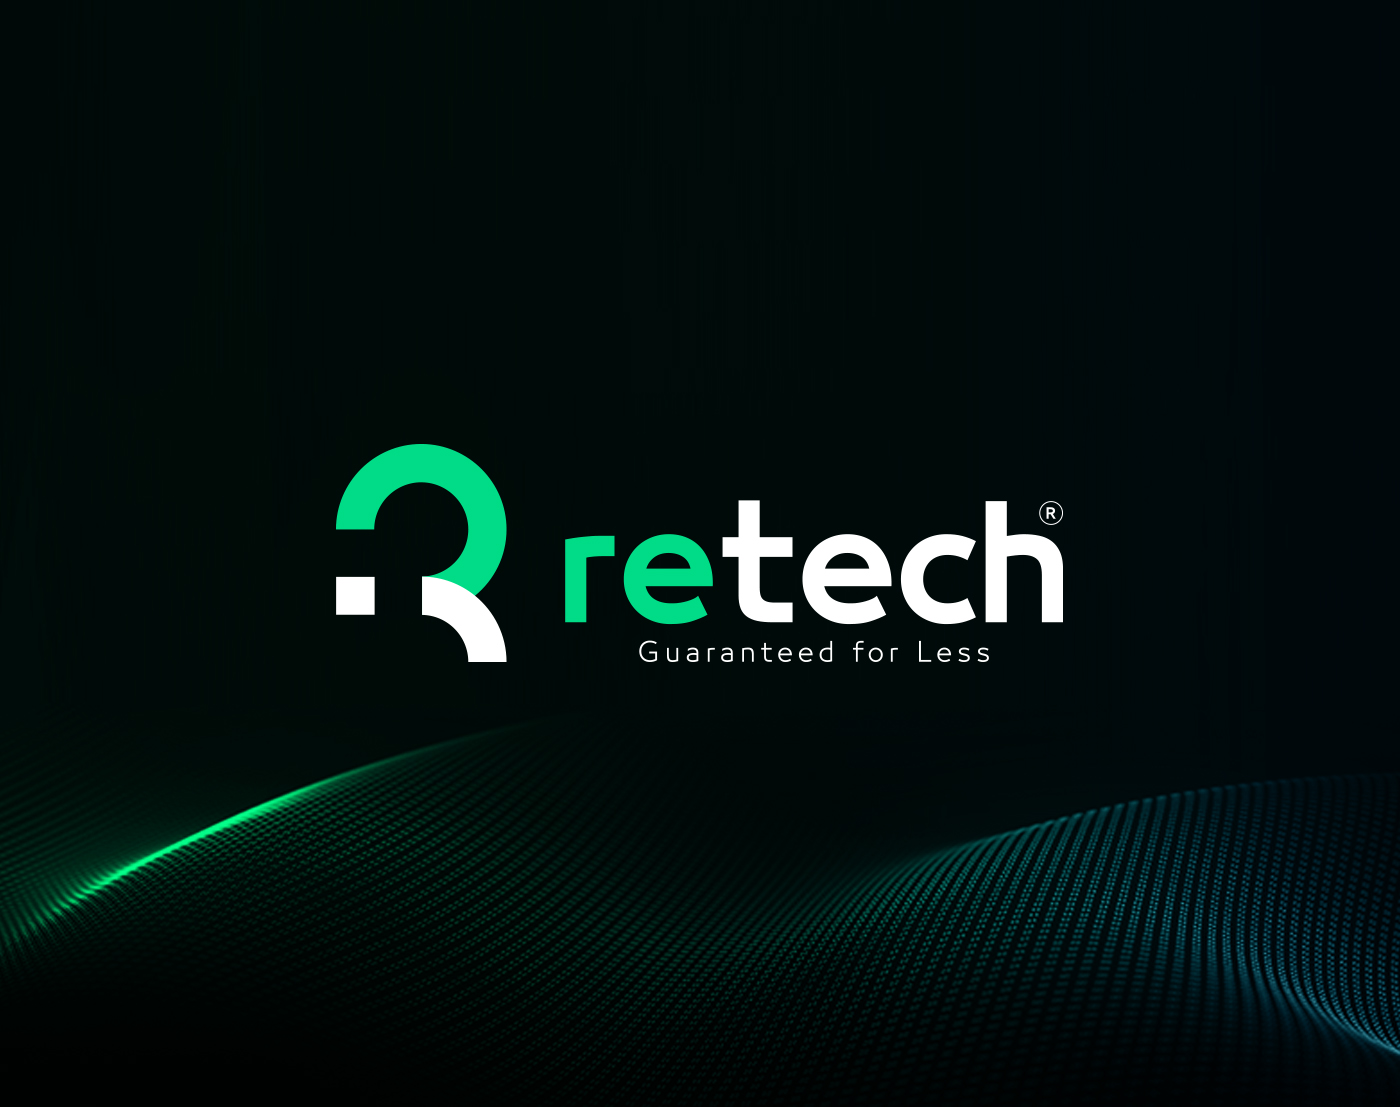 Retech Brand Design